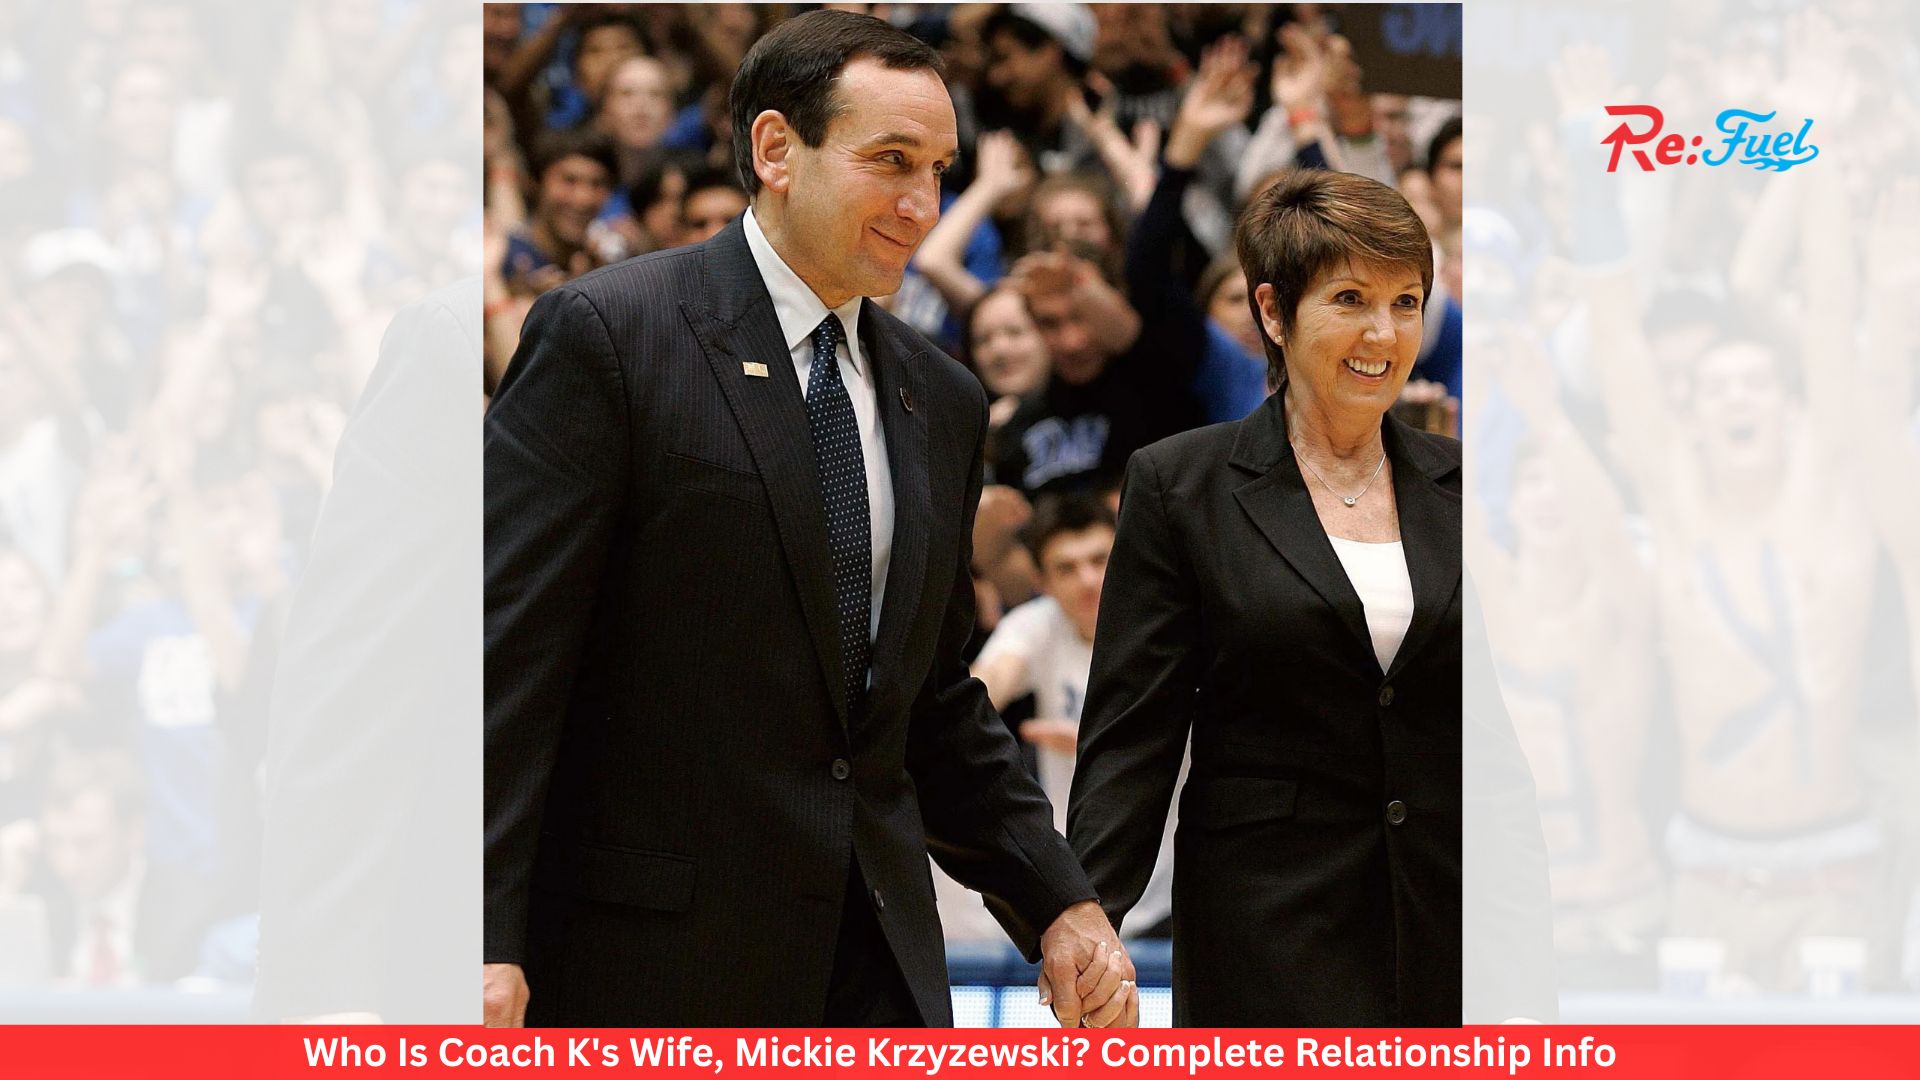 Who Is Coach K's Wife, Mickie Krzyzewski? Complete Relationship Info